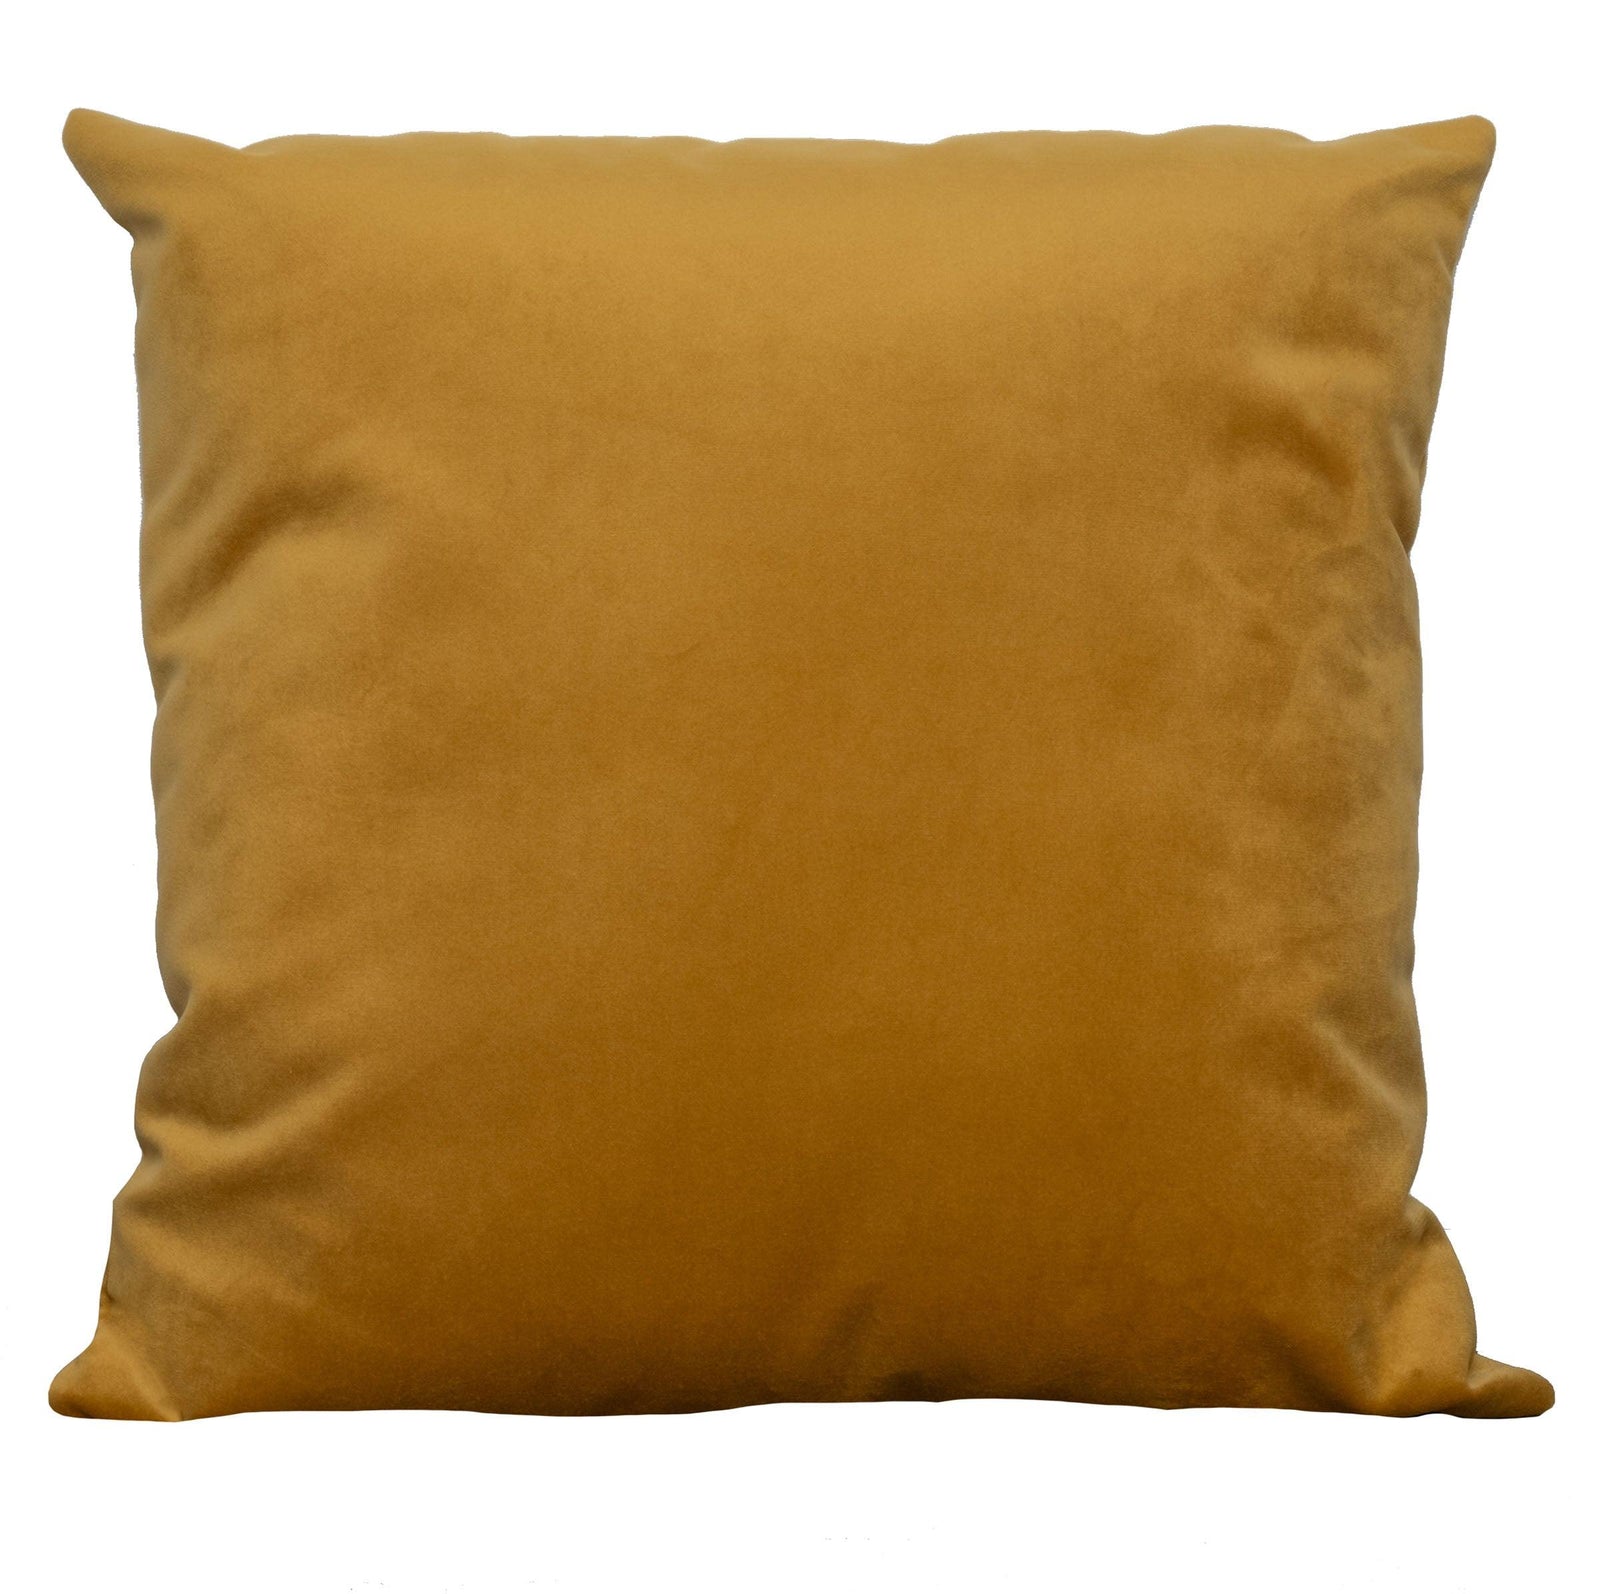 Mustard Velvet Pillow 18x18"